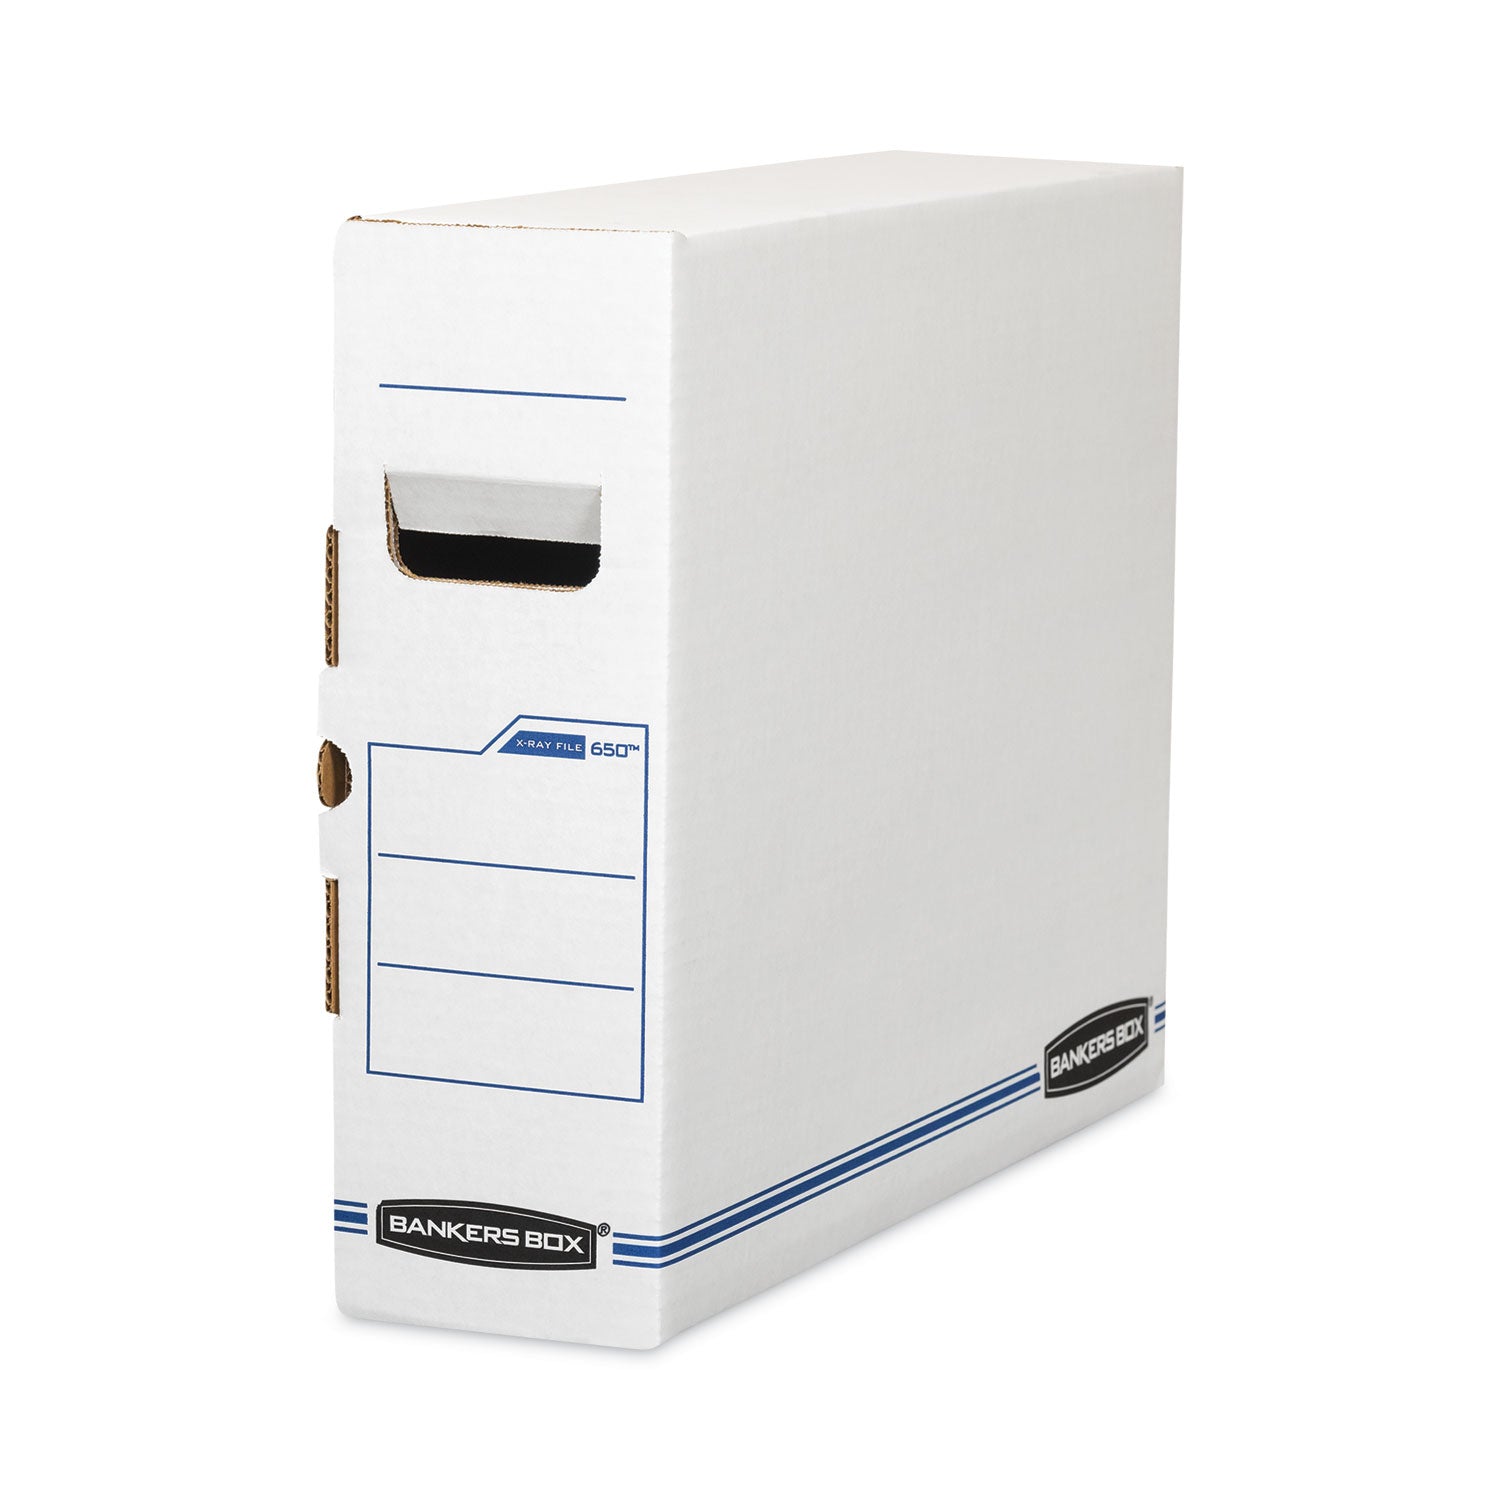 X-Ray Storage Boxes, 5" x 18.75" x 14.88", White/Blue, 6/Carton - 